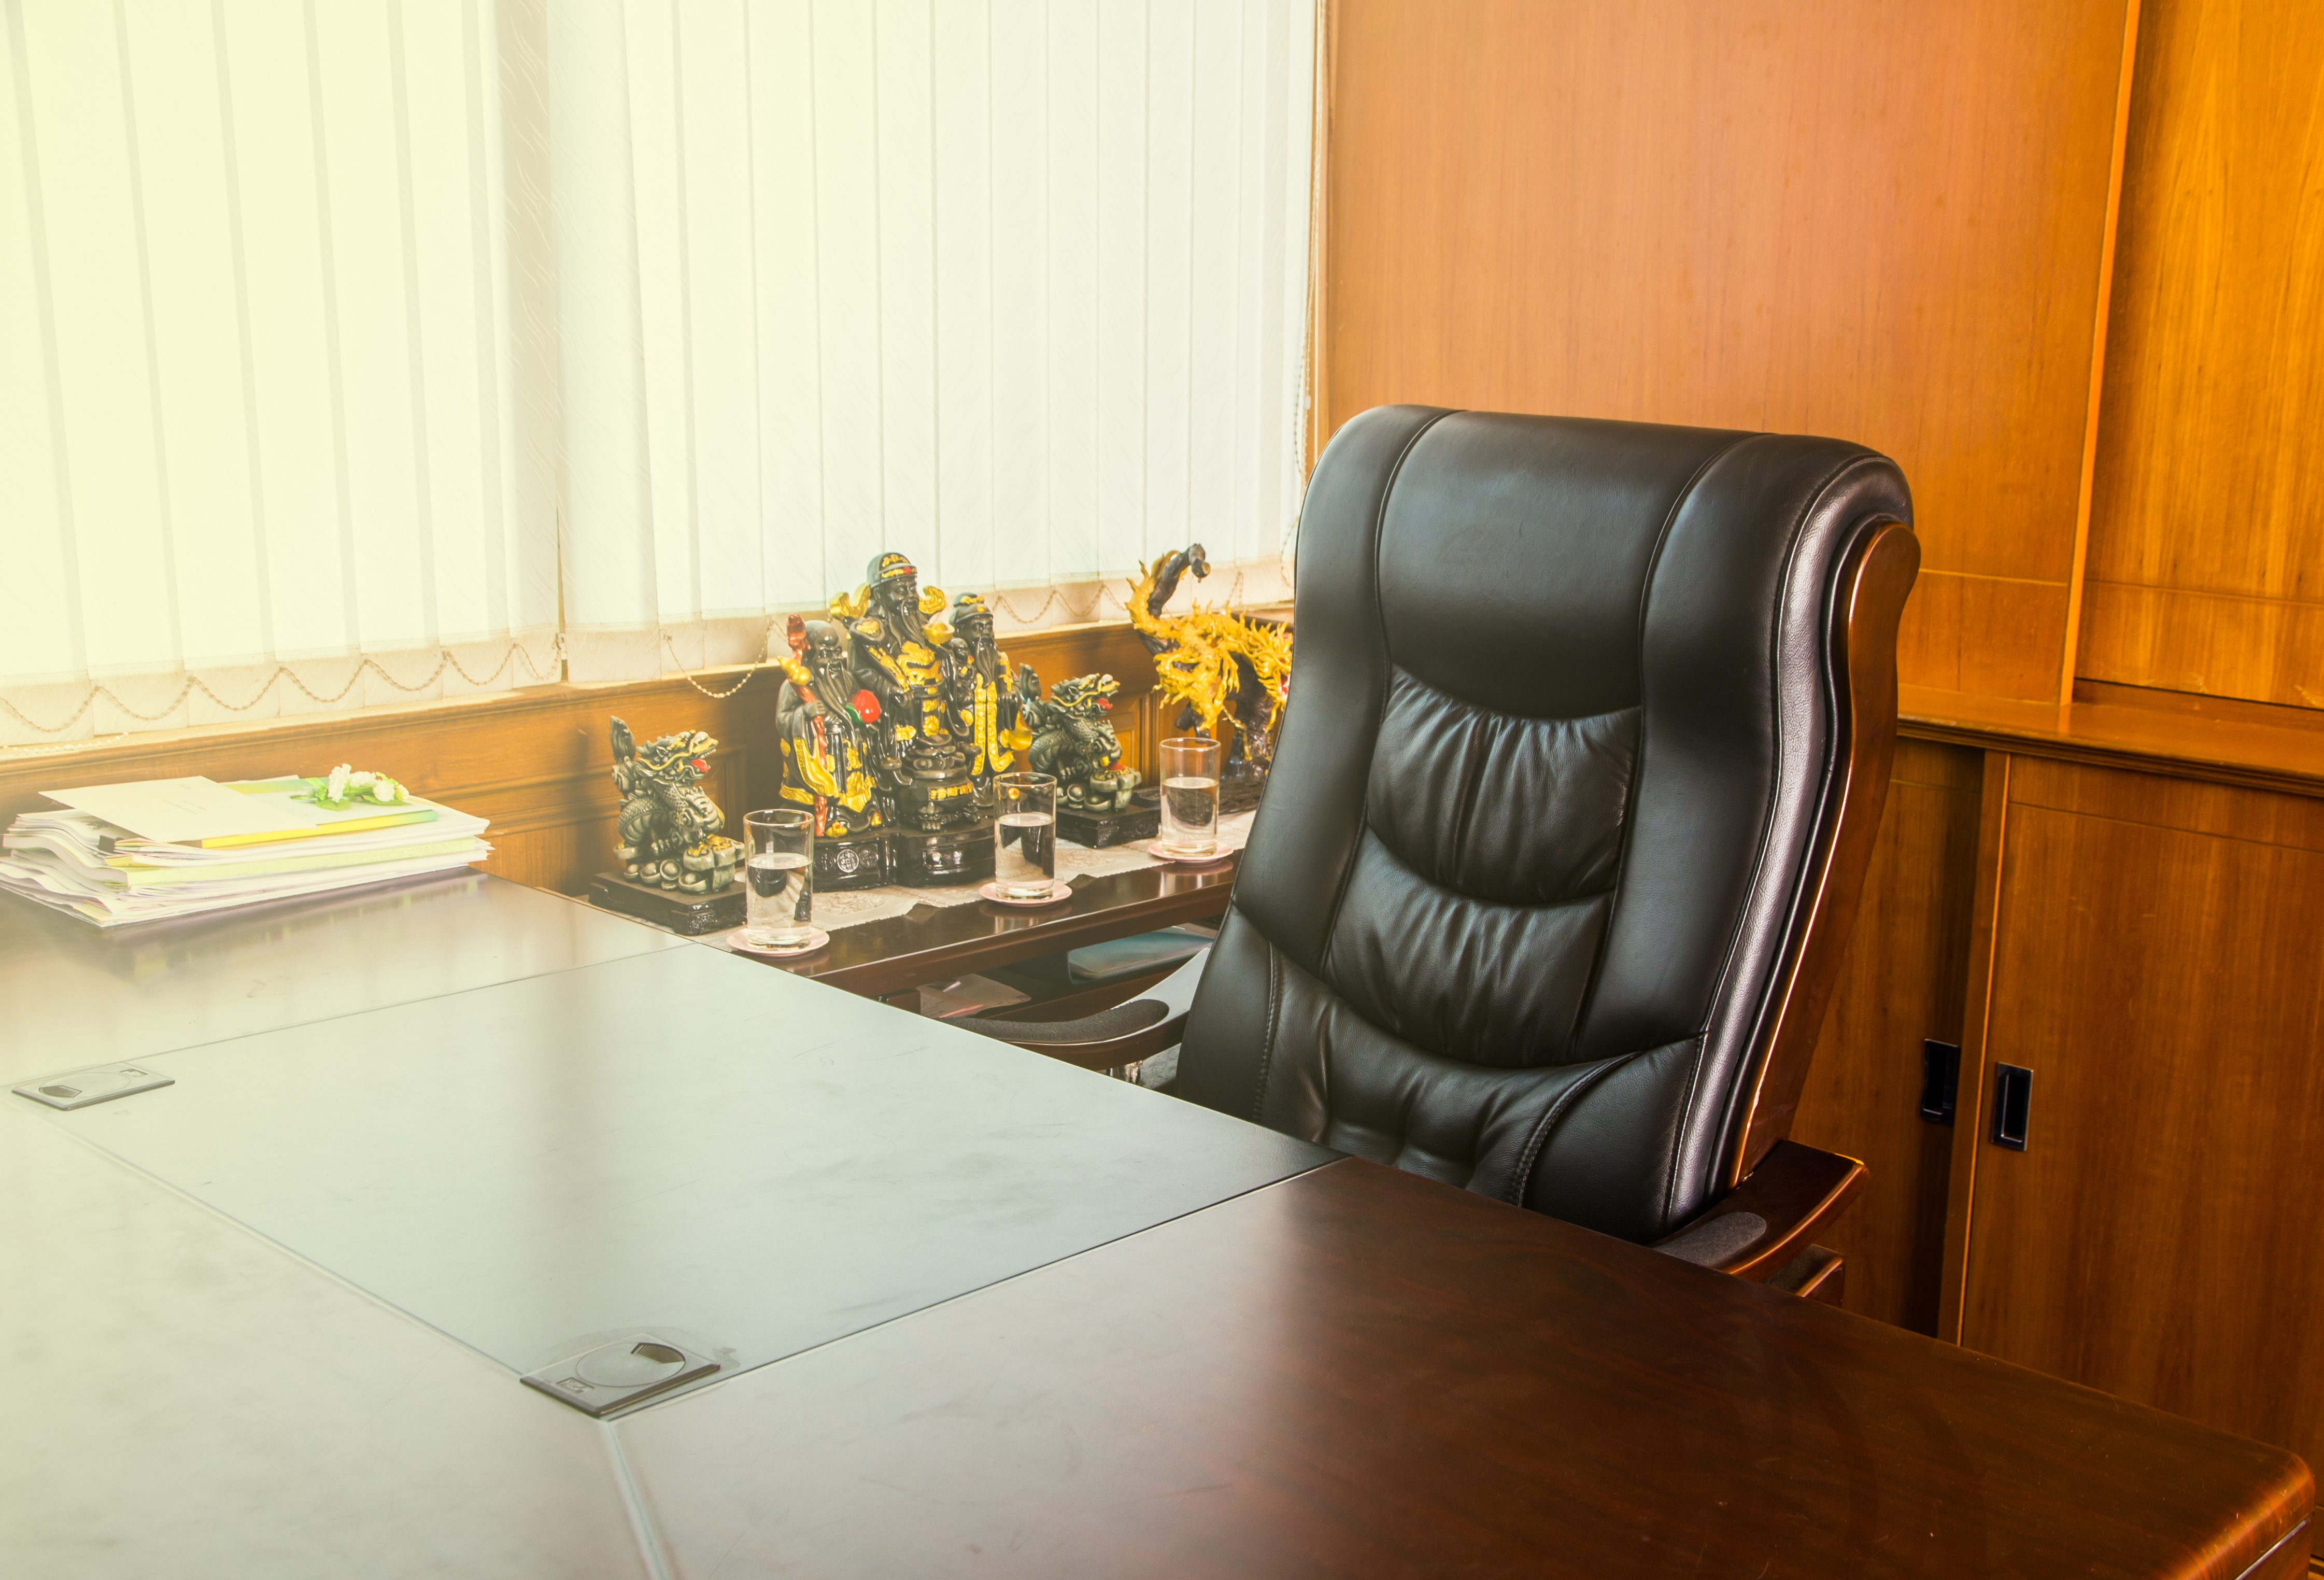 Empty workplace in office | Source: Shutterstock